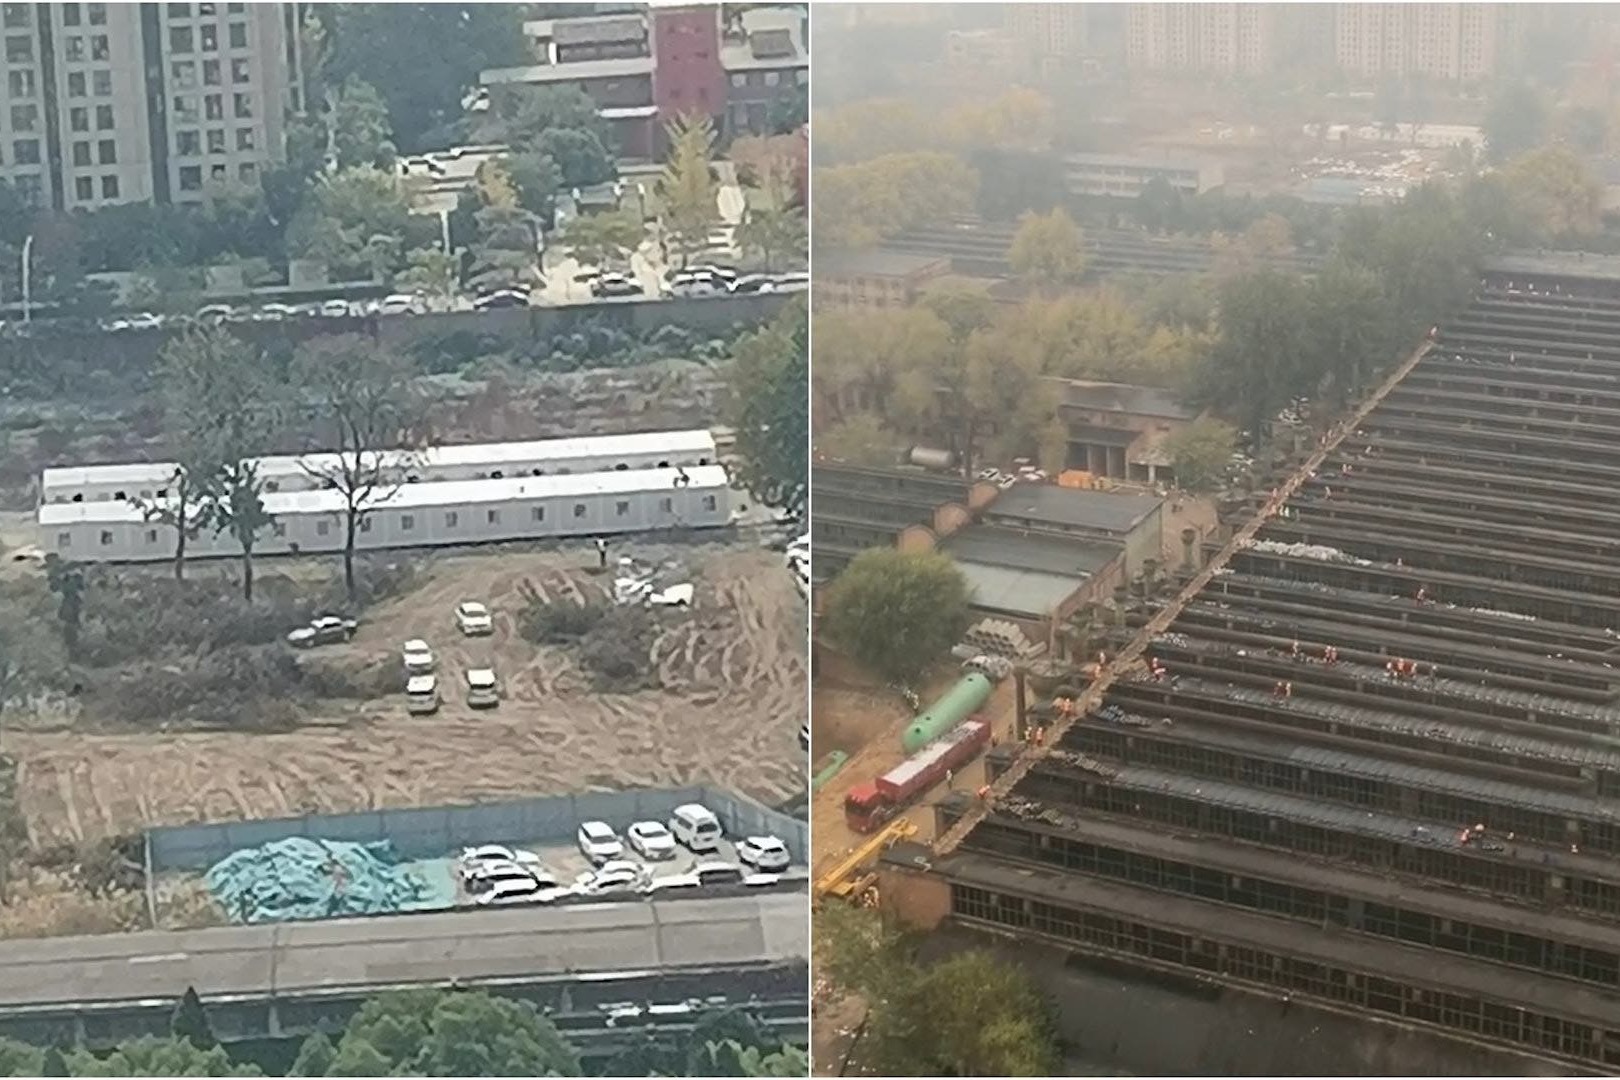 打爛文物建築改建成方艙醫院 河南鄭州「順應民意」停工